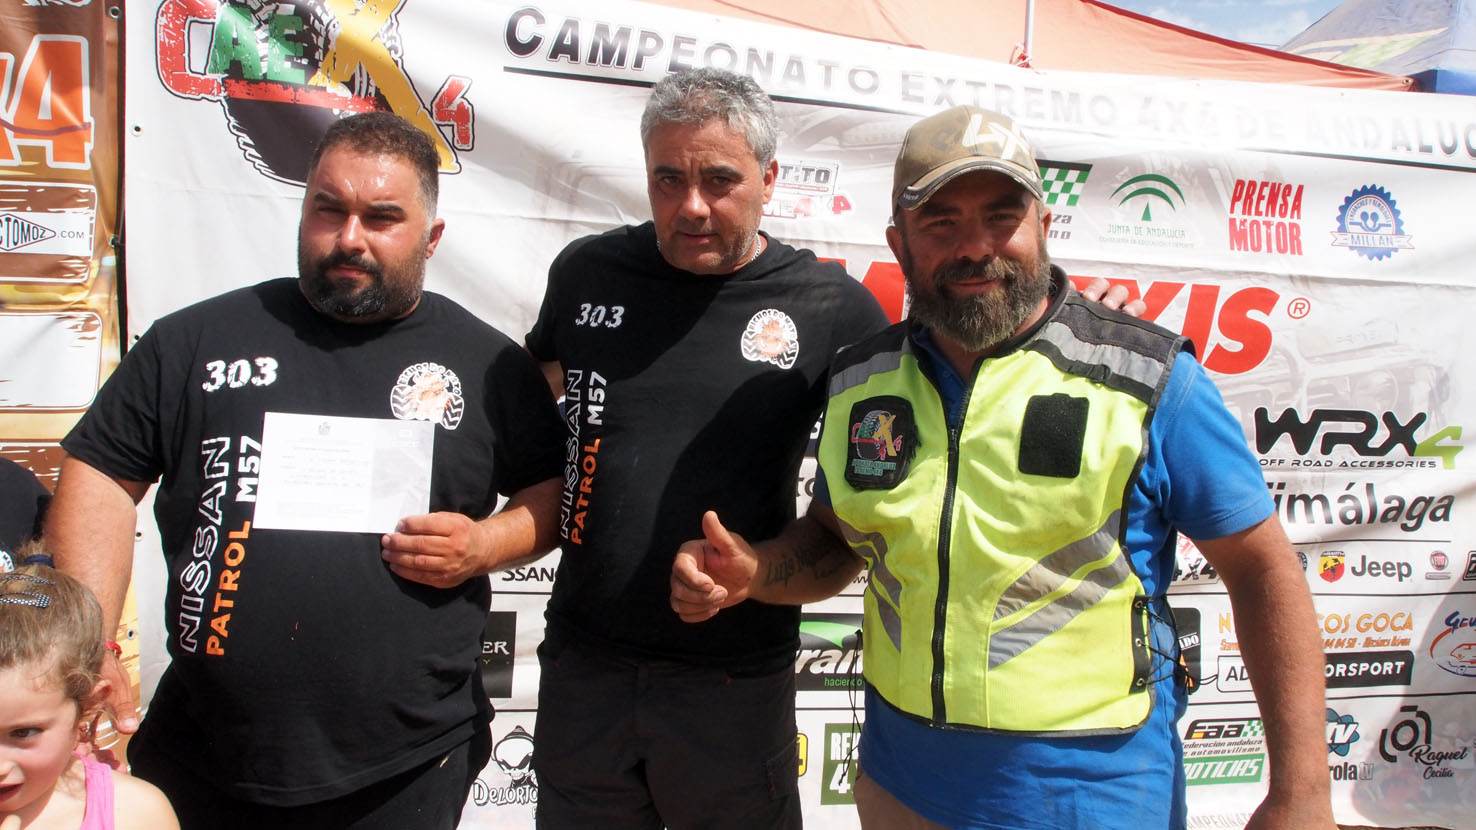 El equipo portugués Bichos do Mato consiguió dar la vuelta más rápida al circuito en Martos.